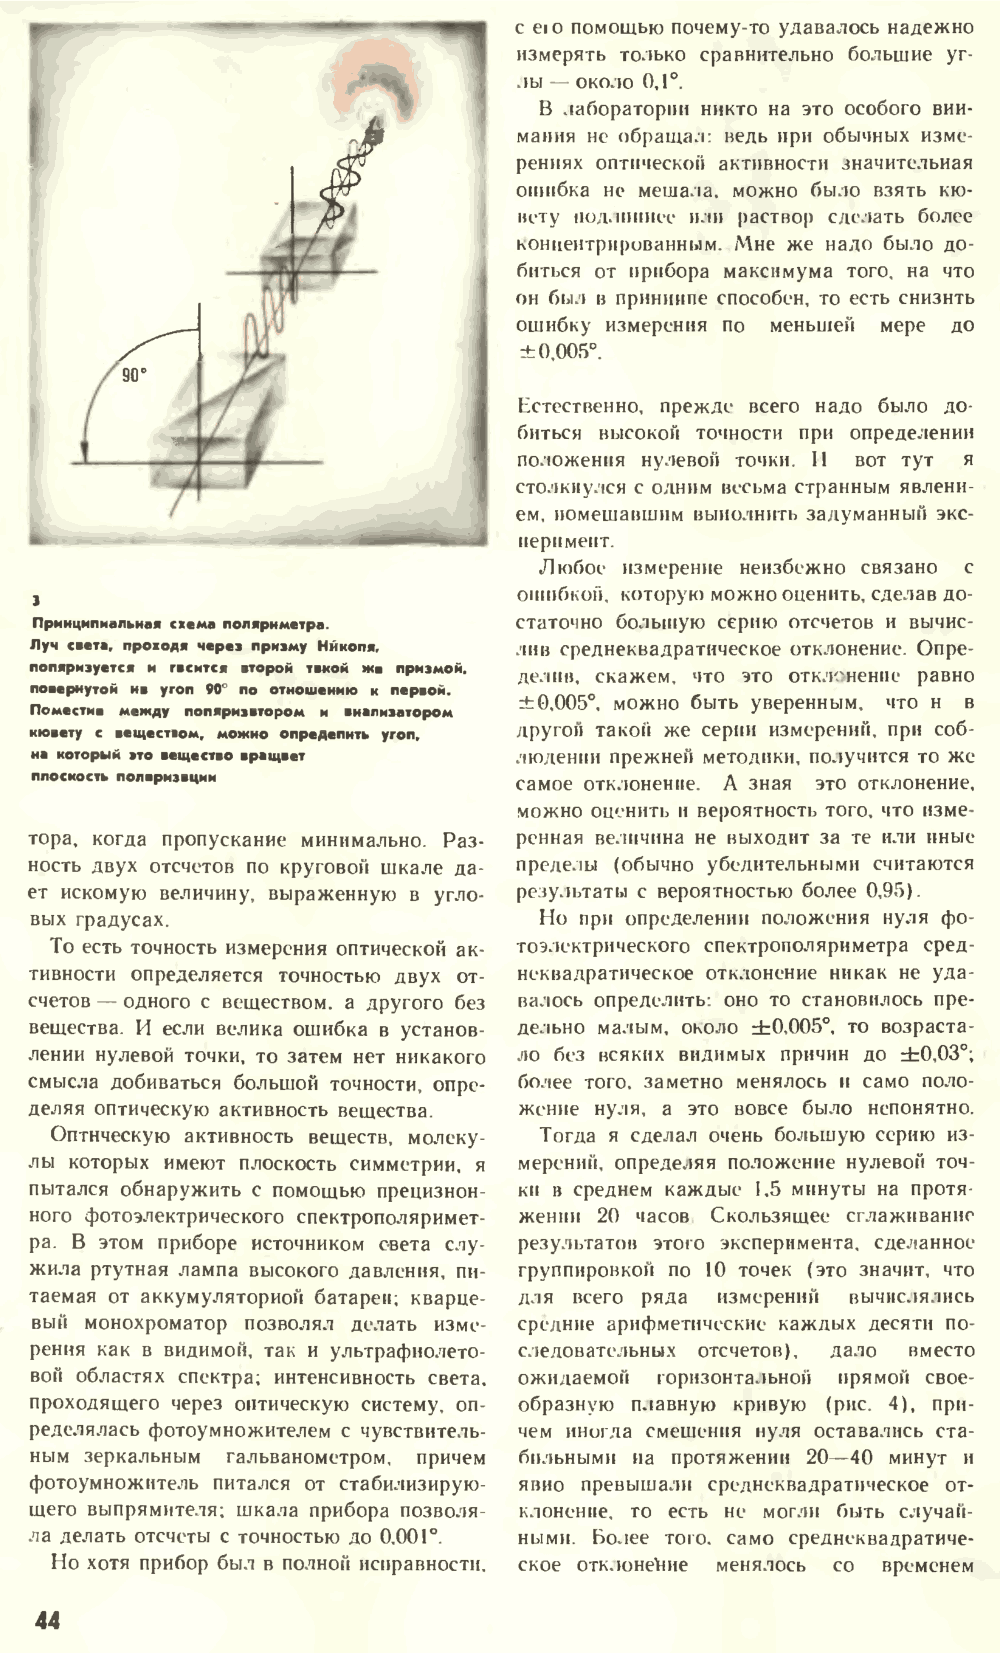 Что нарушает симметрию? В.Е. Жвирблис. Химия и жизнь, 1977, №12, с.42-49. Фотокопия №3